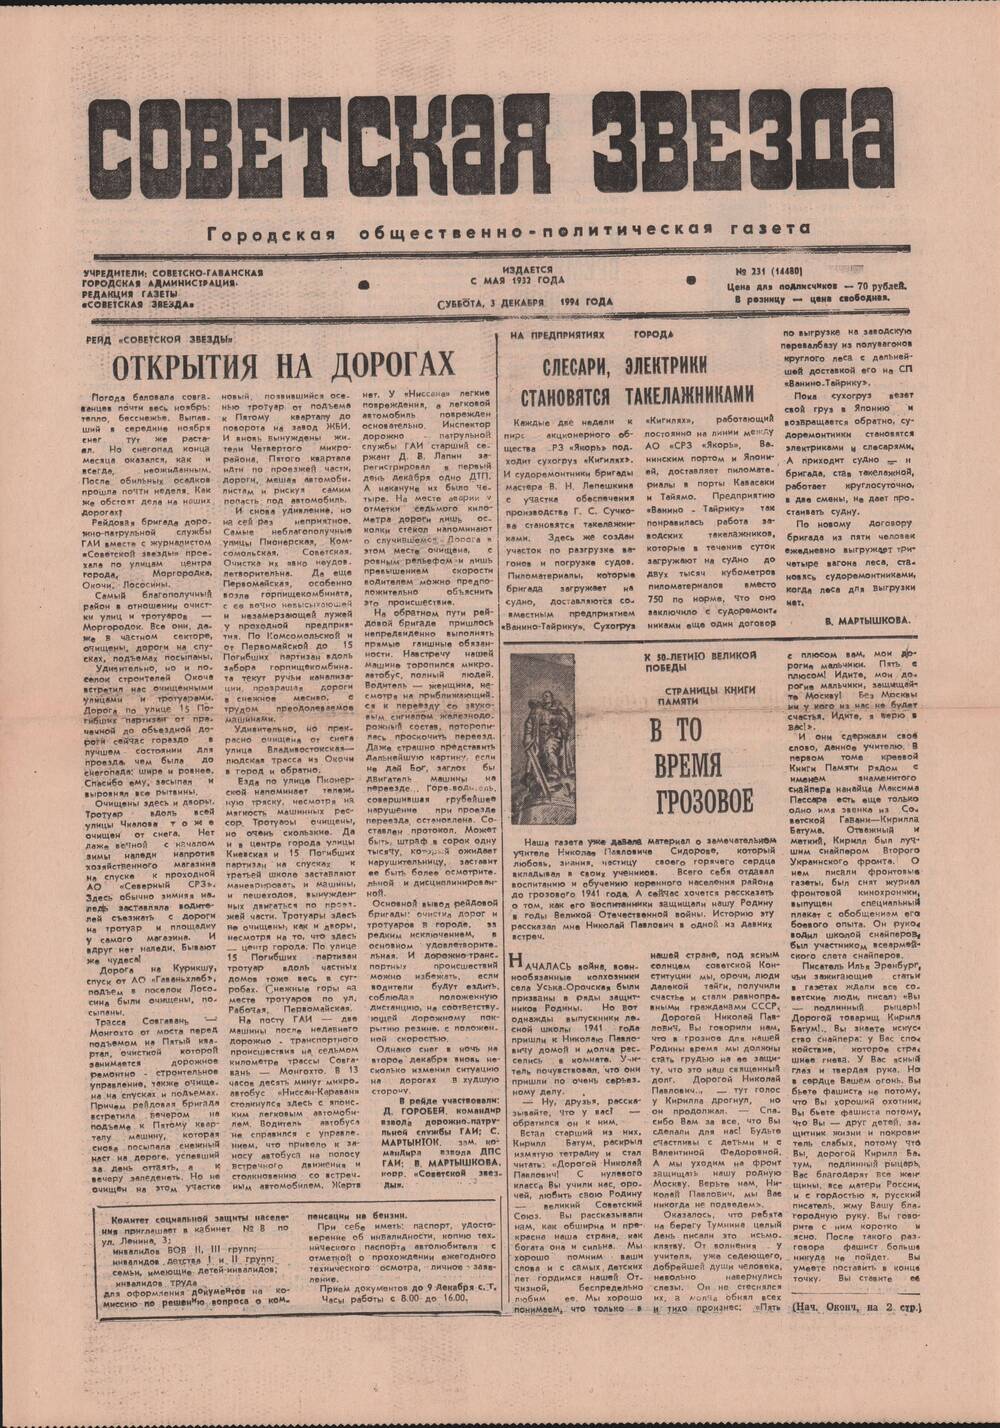 Газета «Советская звезда» № 231 (14480) от 03.12.1994 под рубрикой «50 лет Великой Победы».